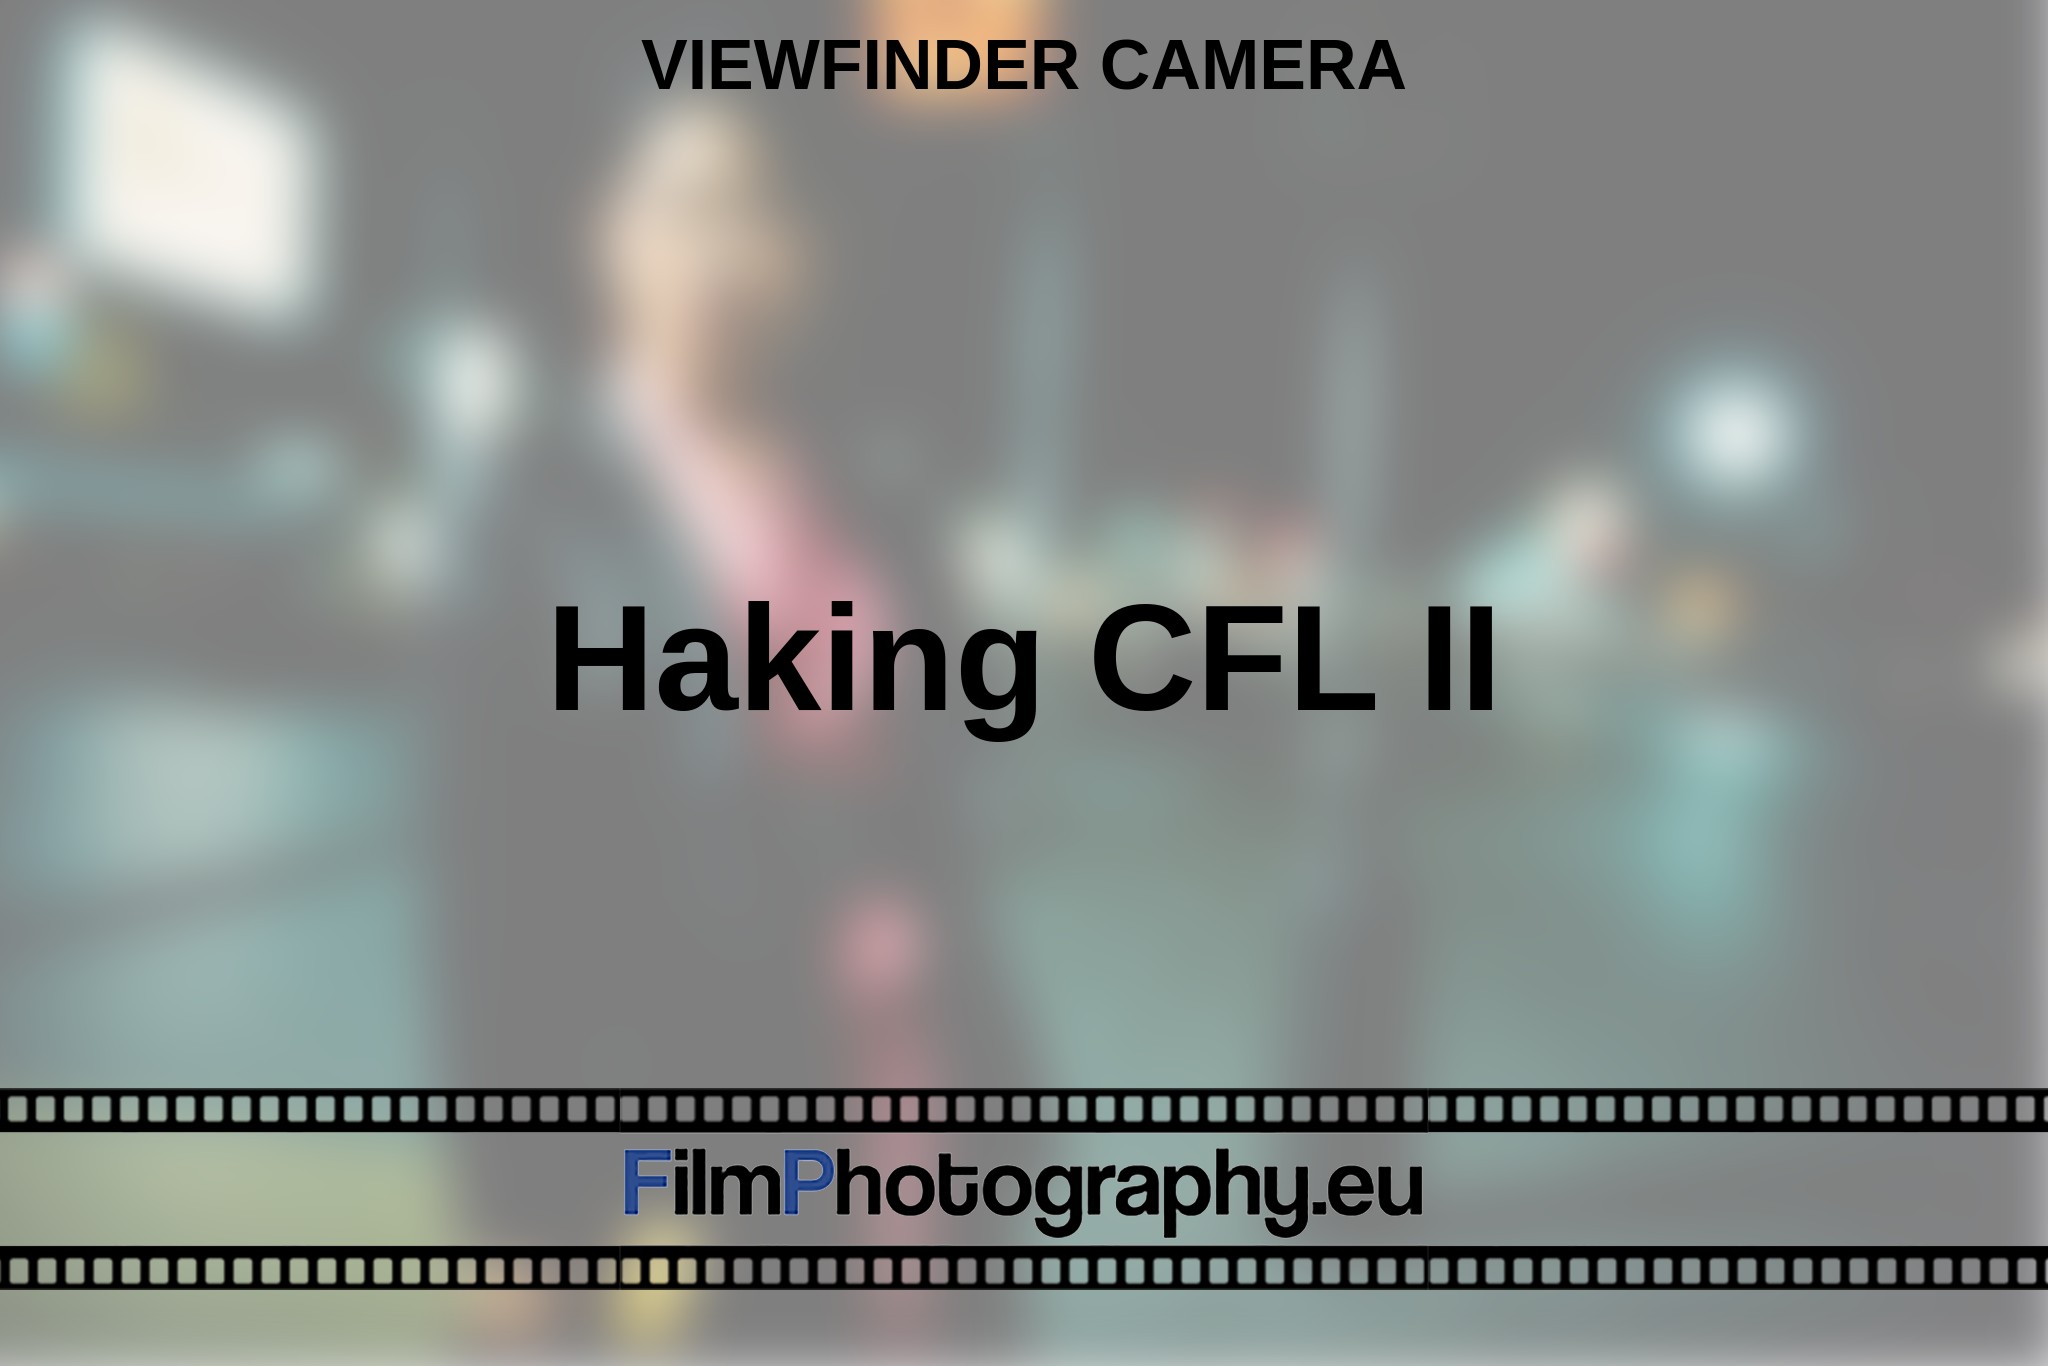 haking-cfl-ii-viewfinder-camera-en-bnv.jpg